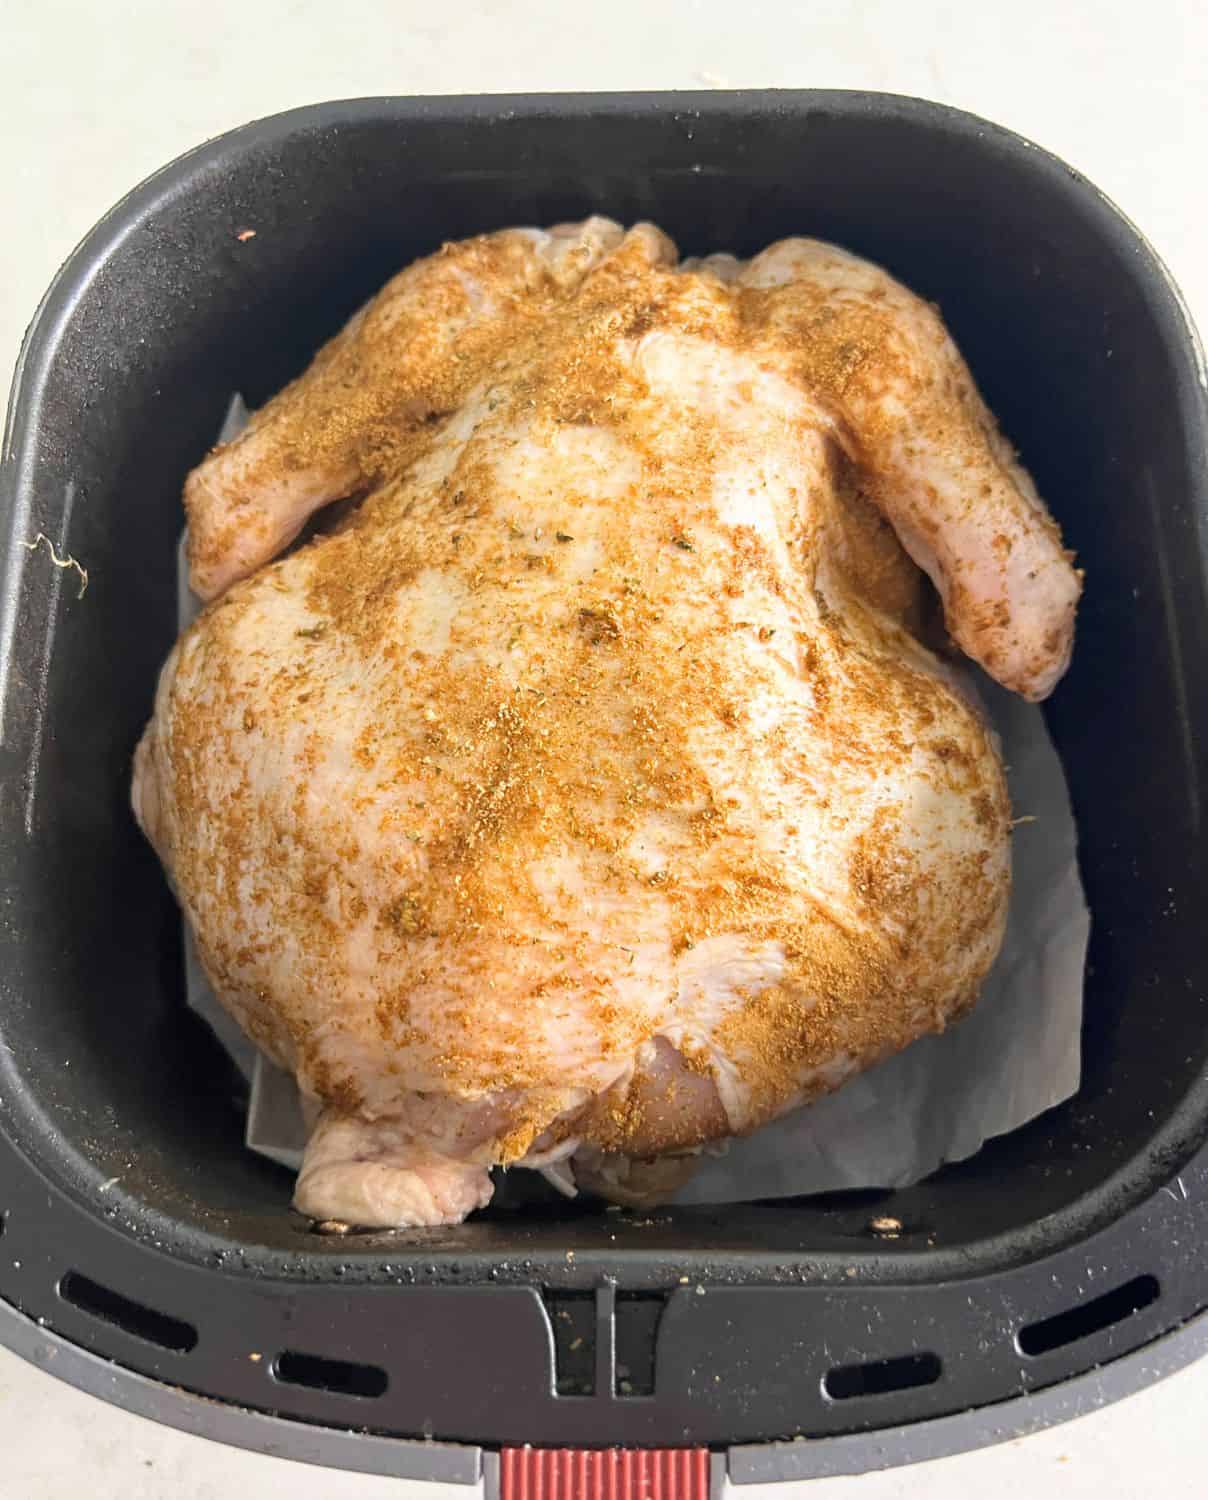 Seasoned whole chicken in air fryer basket. 